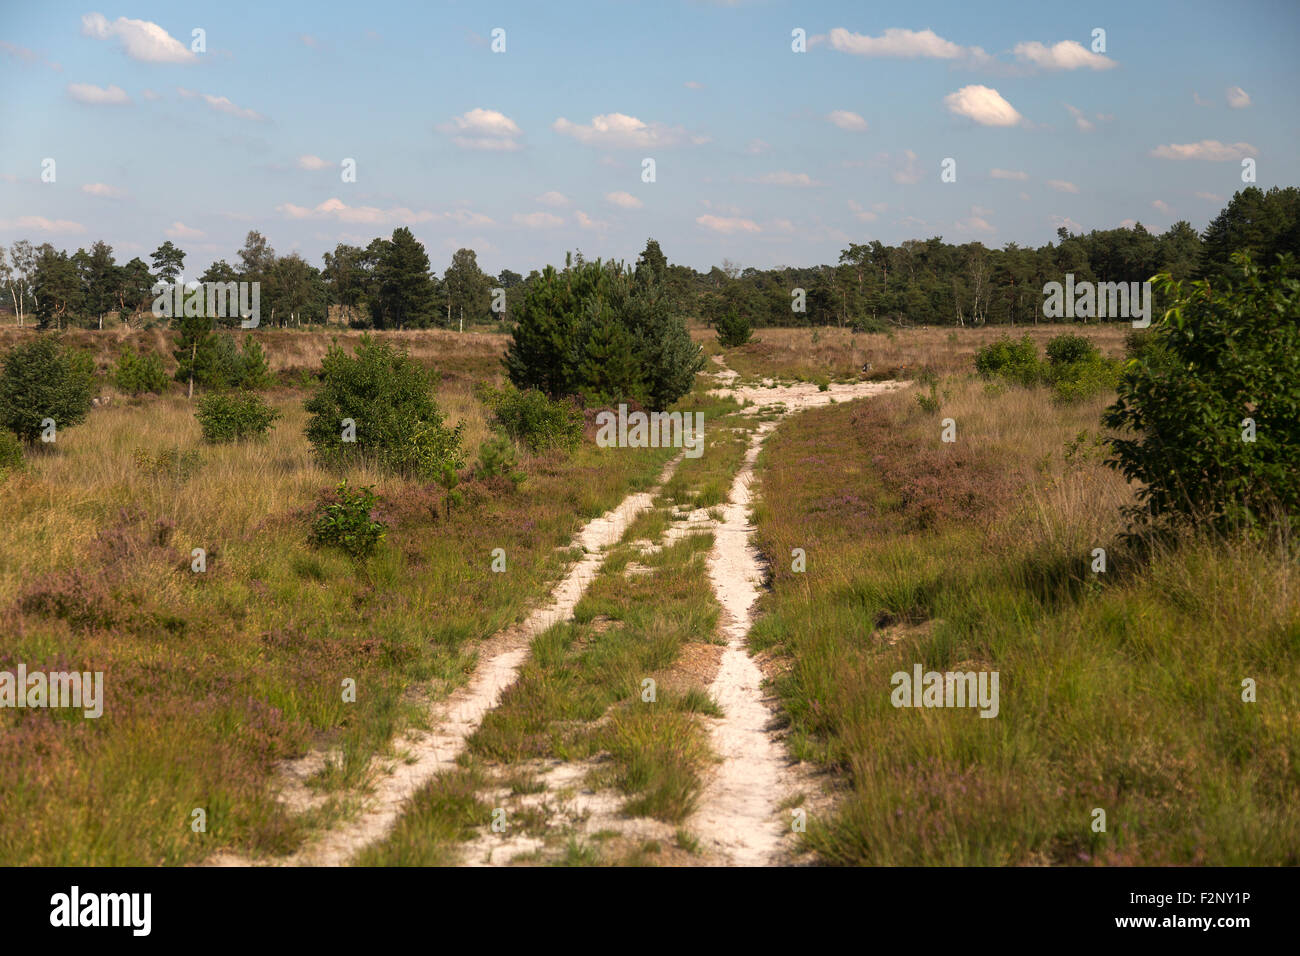 Sandy Track in Heide reservieren Kalmthoutse Heide, Kalmthout, Flandern, Belgien Stockfoto